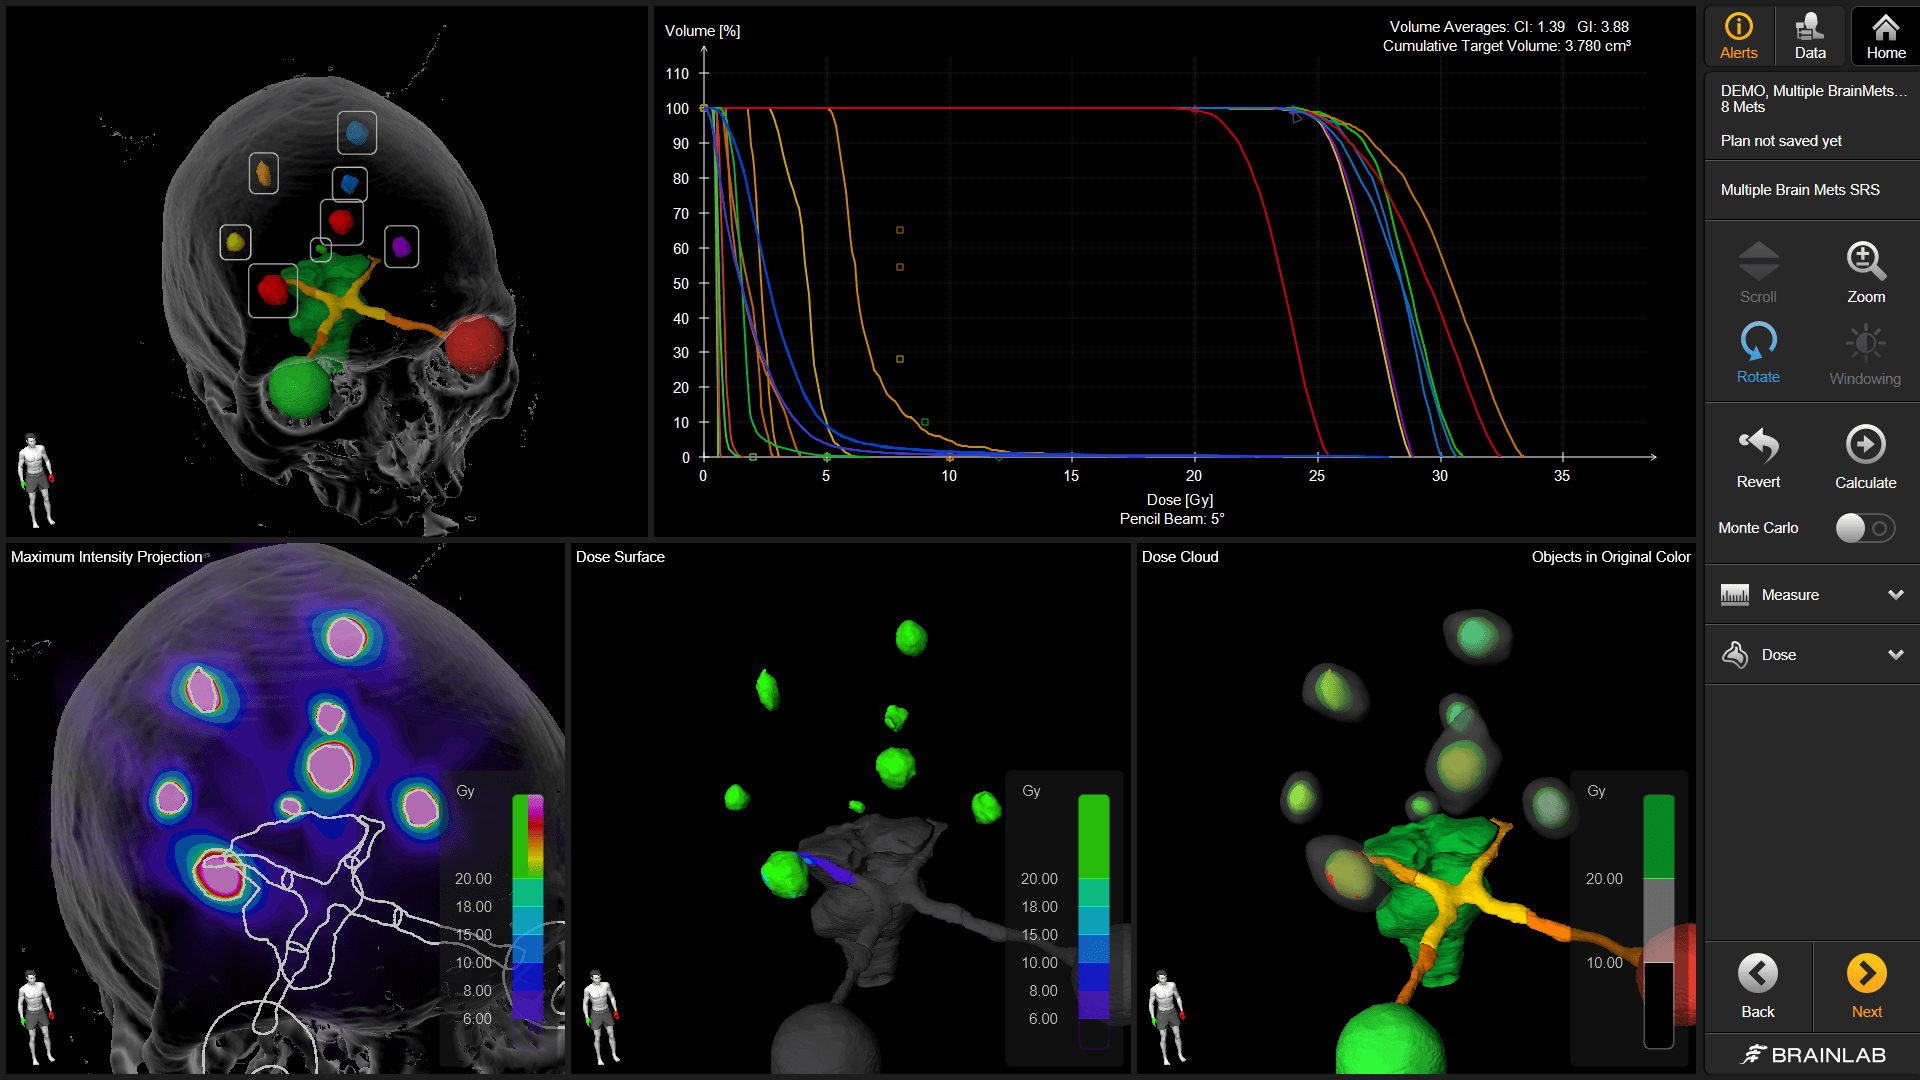 Capture d’écran du logiciel Brainlab Elements montrant les diverses vues et données susceptibles d’aider les utilisateurs à effectuer une planification du traitement de radiothérapie et de radiochirurgie homogène.